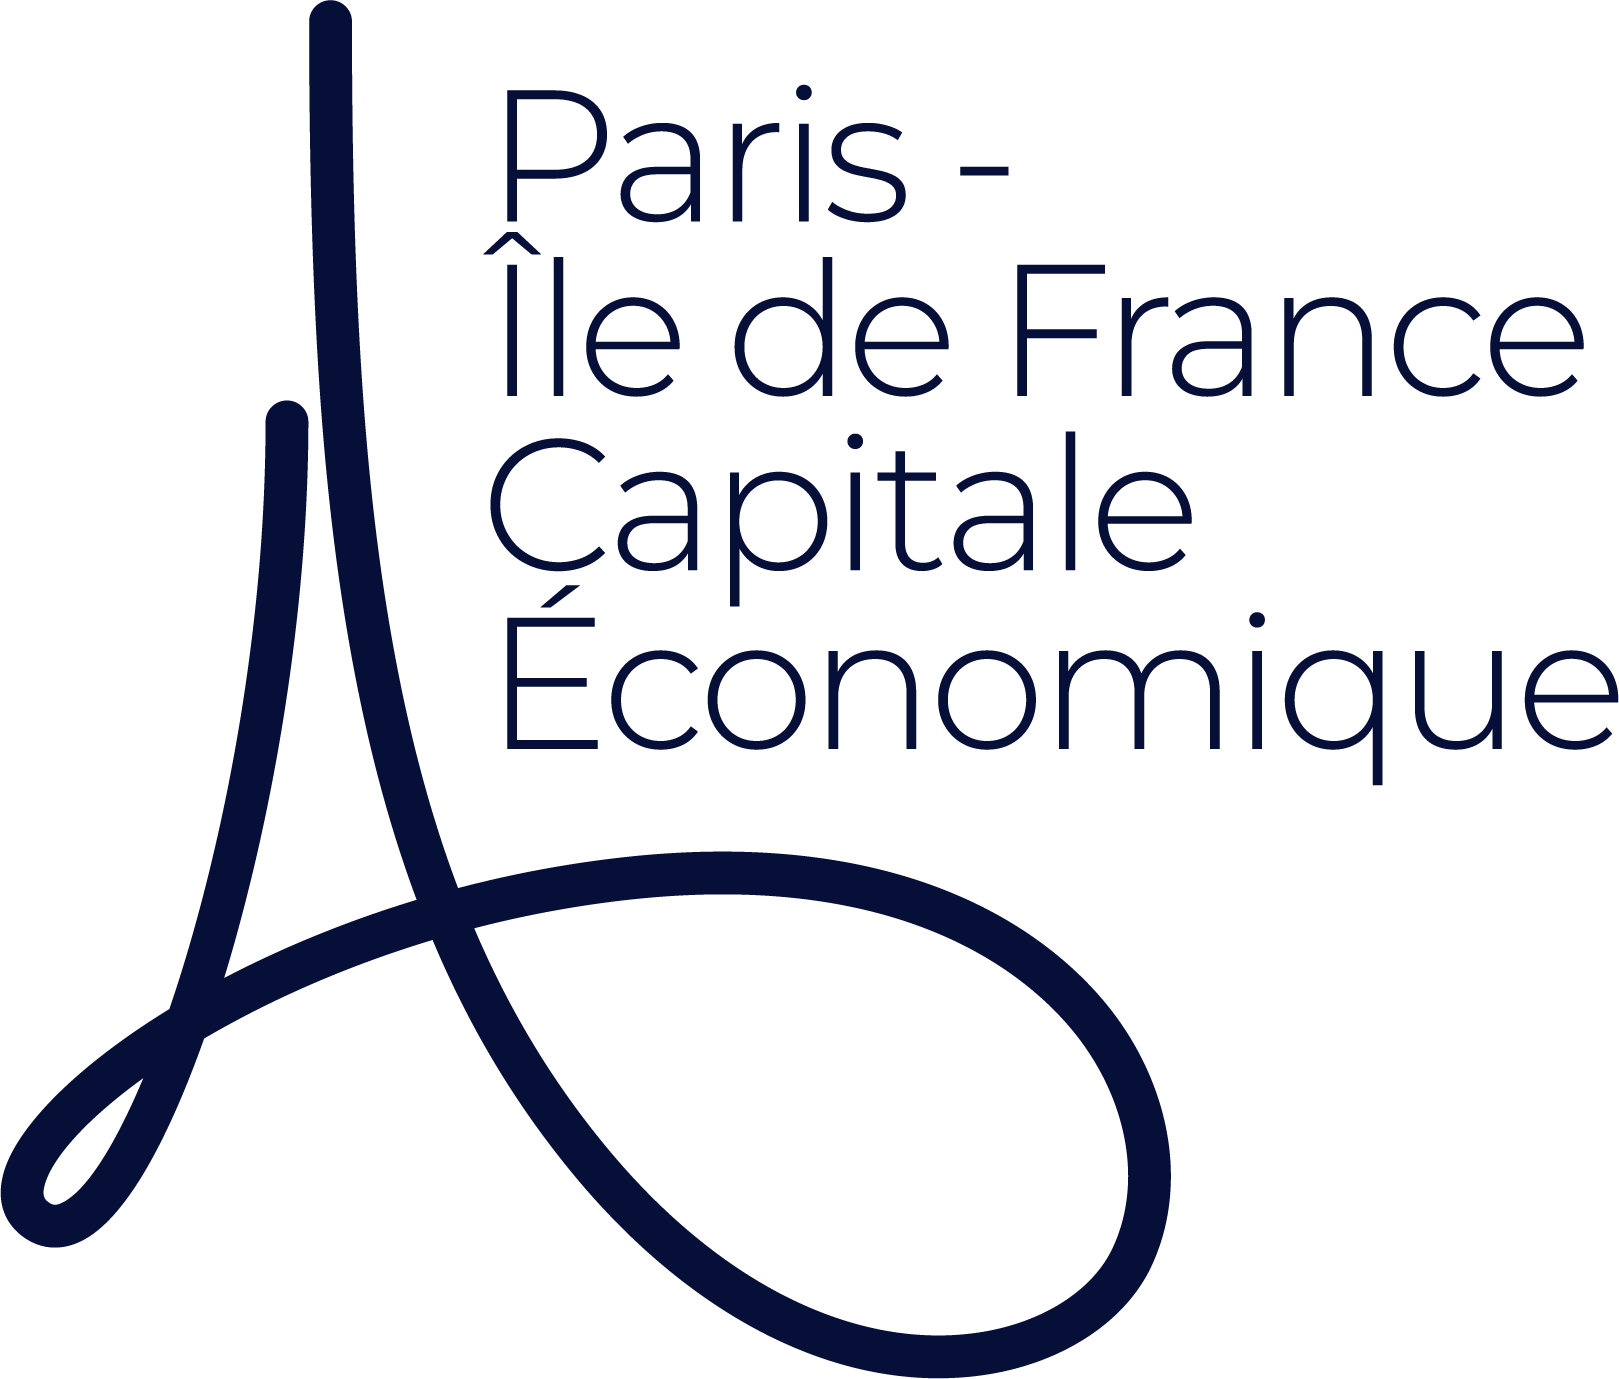 Paris-Île de France Capitale Économique